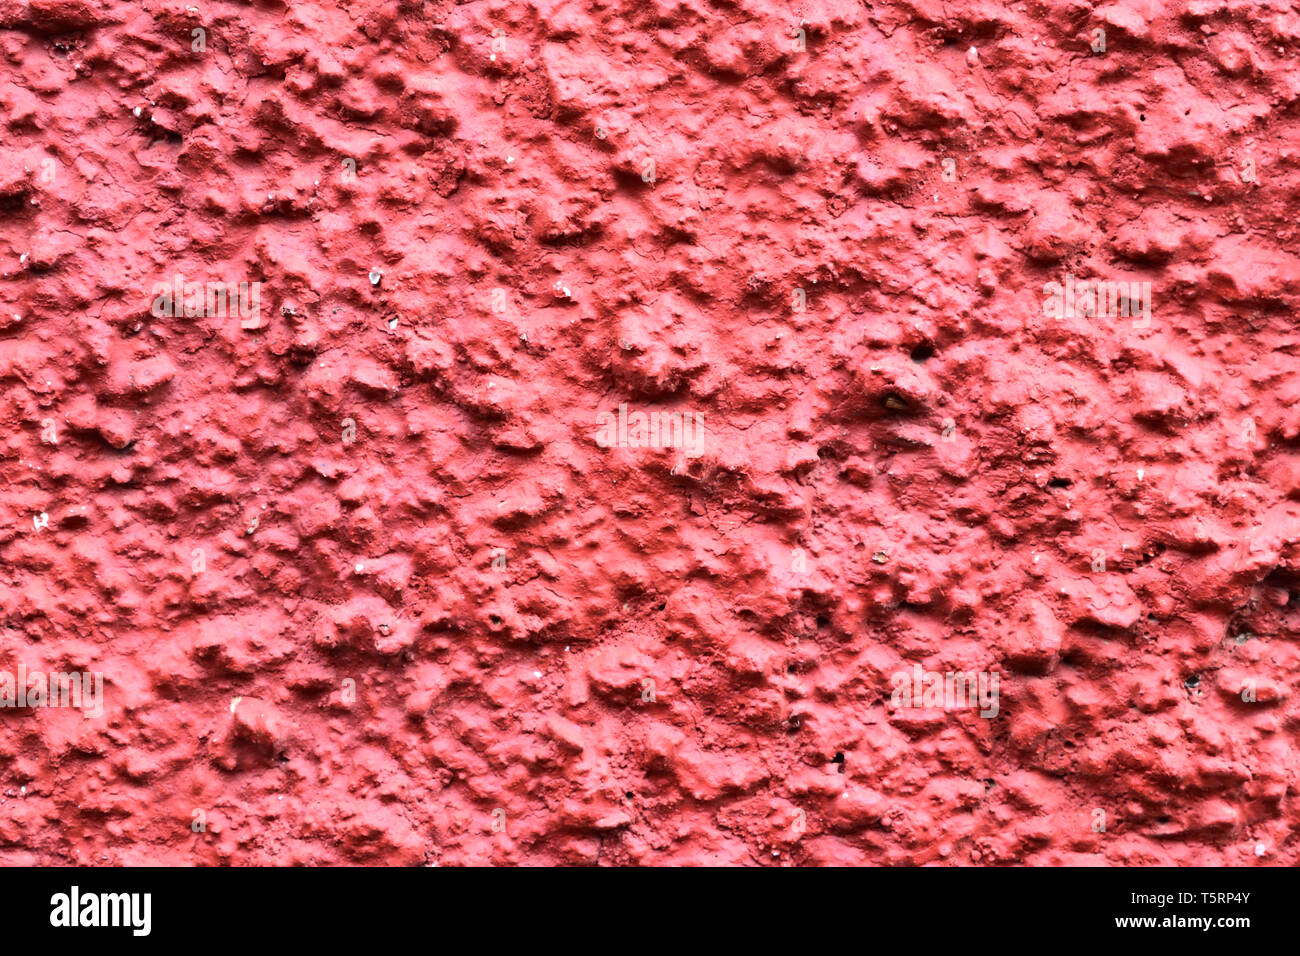 Textura granular roja de pared la textura de la superficie granulada. Foto de stock